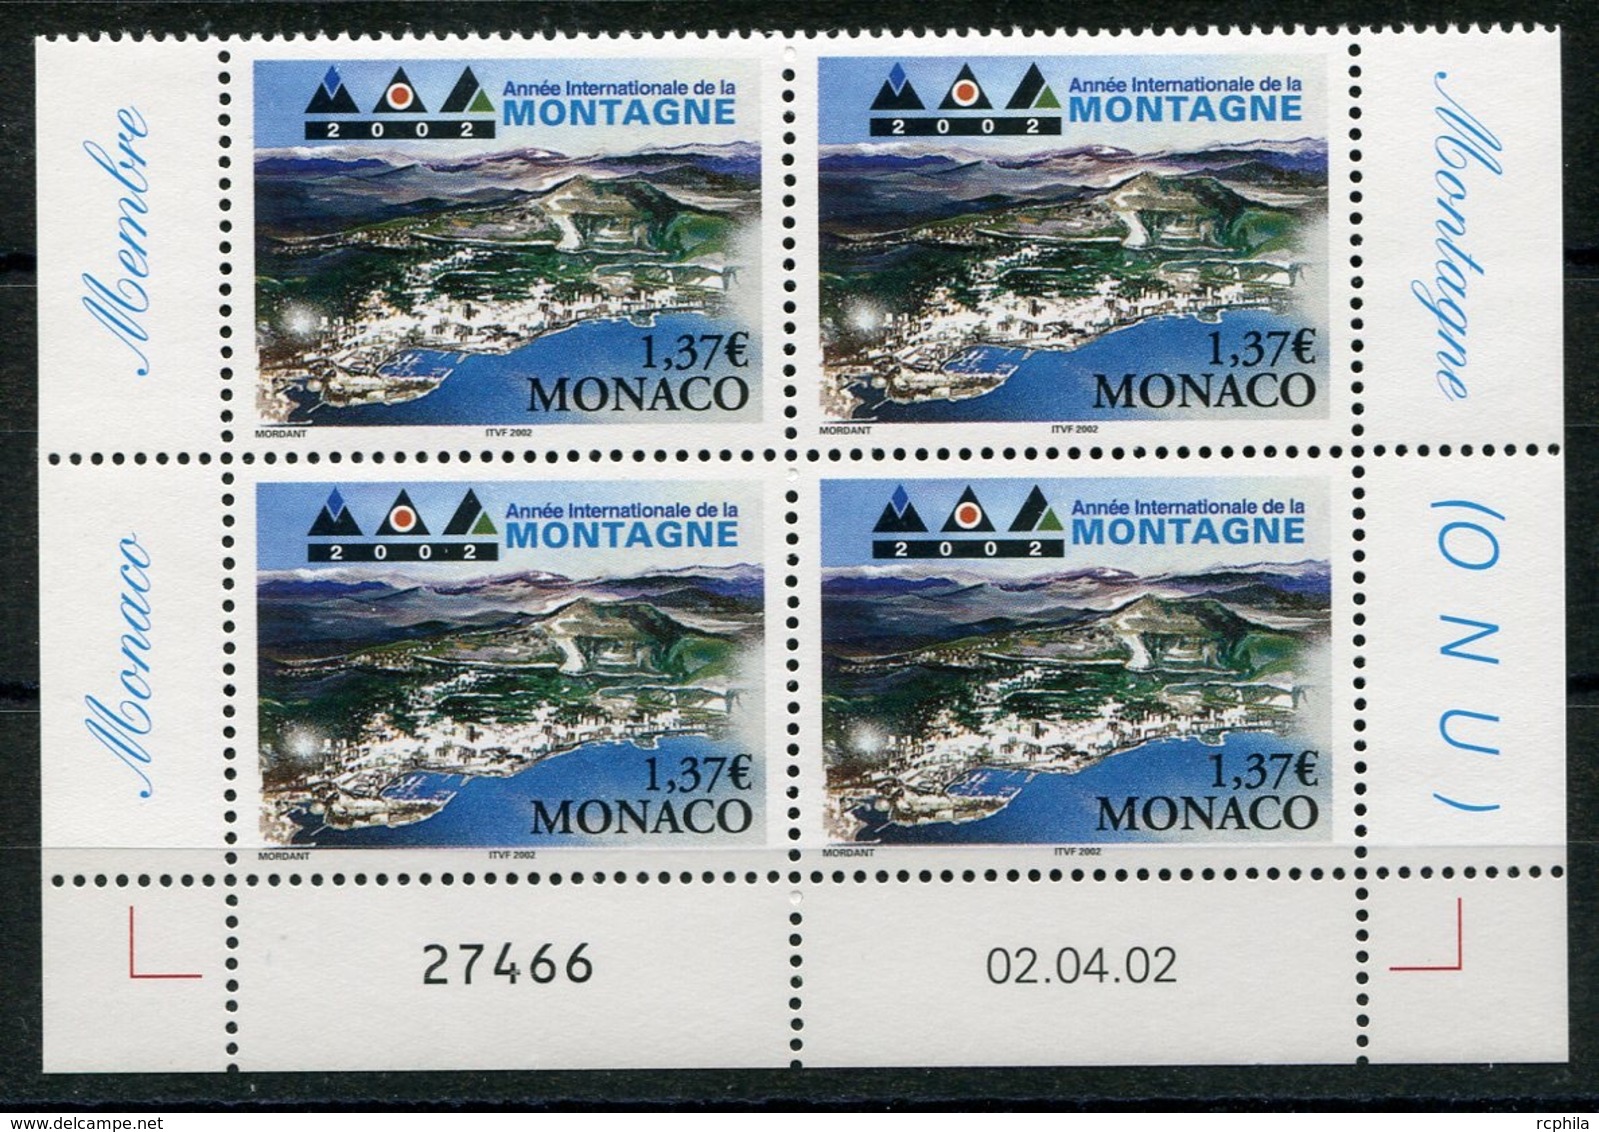 RC 18101 MONACO N° 2355 ANNÉE DE LA MONTAGNE BLOC DE 4 COIN DATÉ NEUF ** TB - Unused Stamps